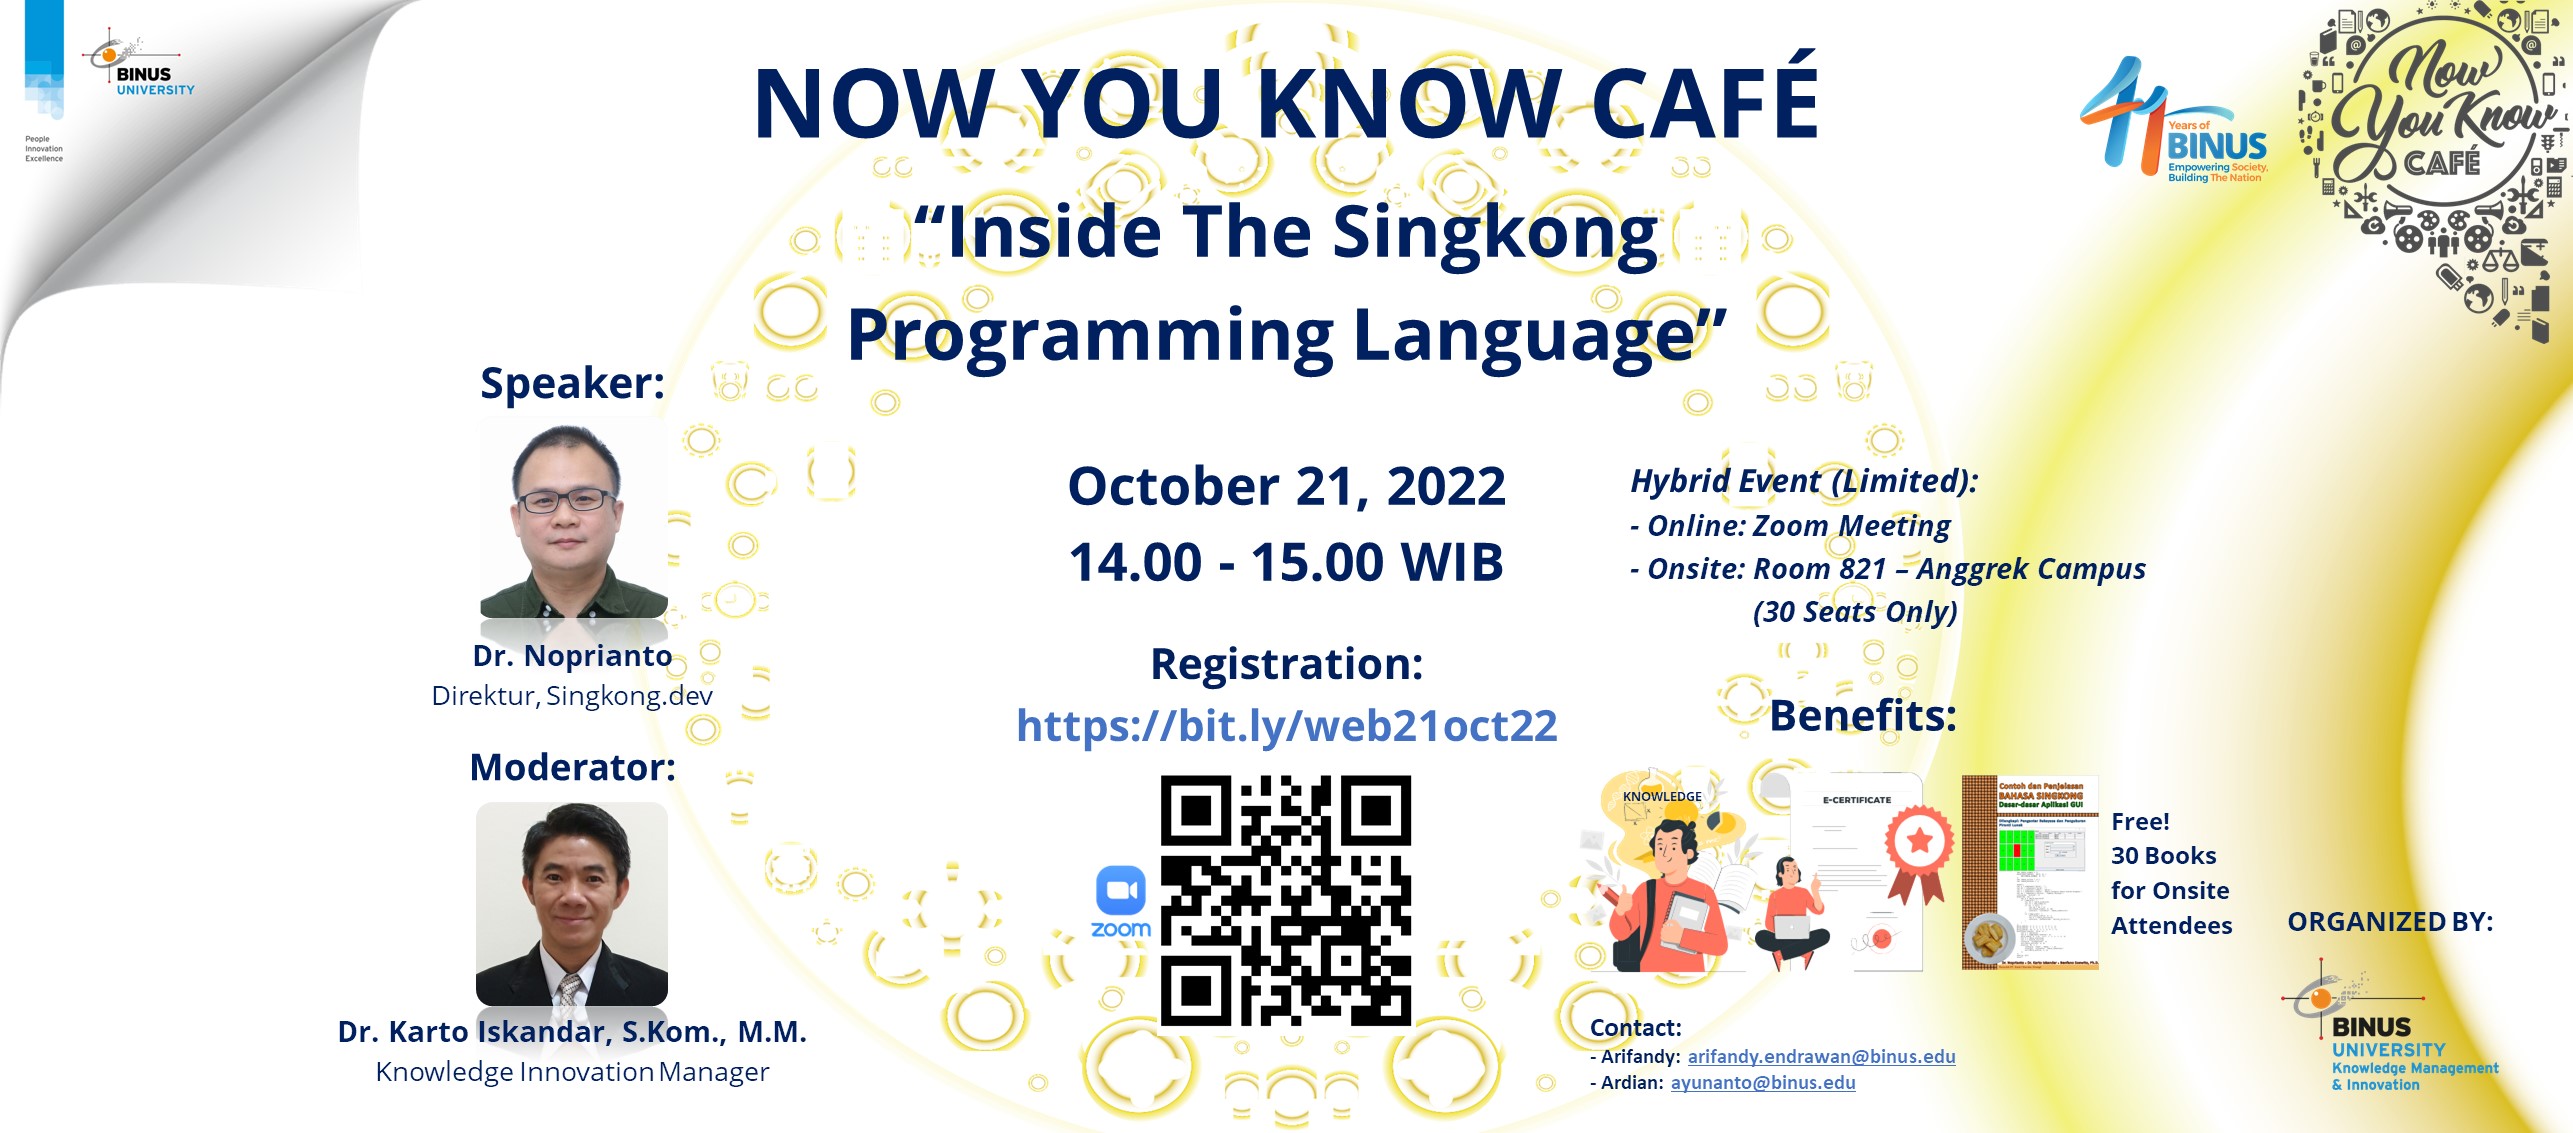 NYKC “Inside the Singkong Programming Language”